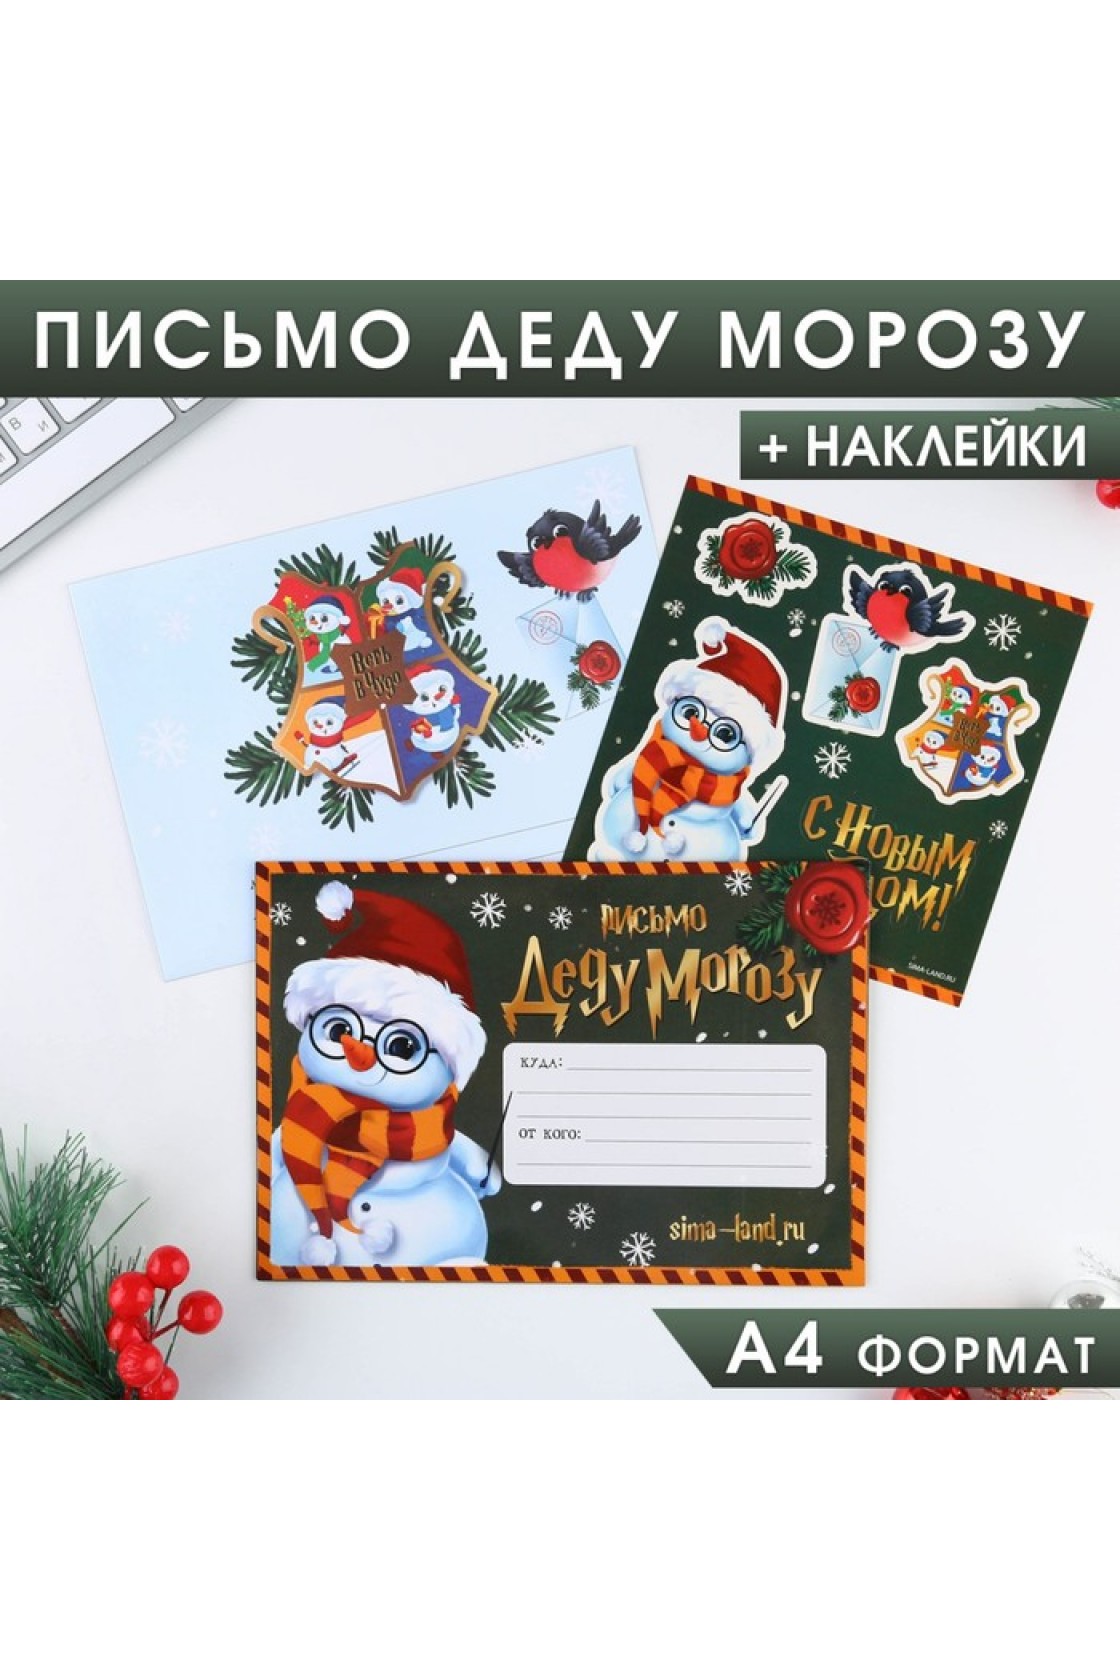 Купить Письмо Деду Морозу в Новосибирске с доставкой